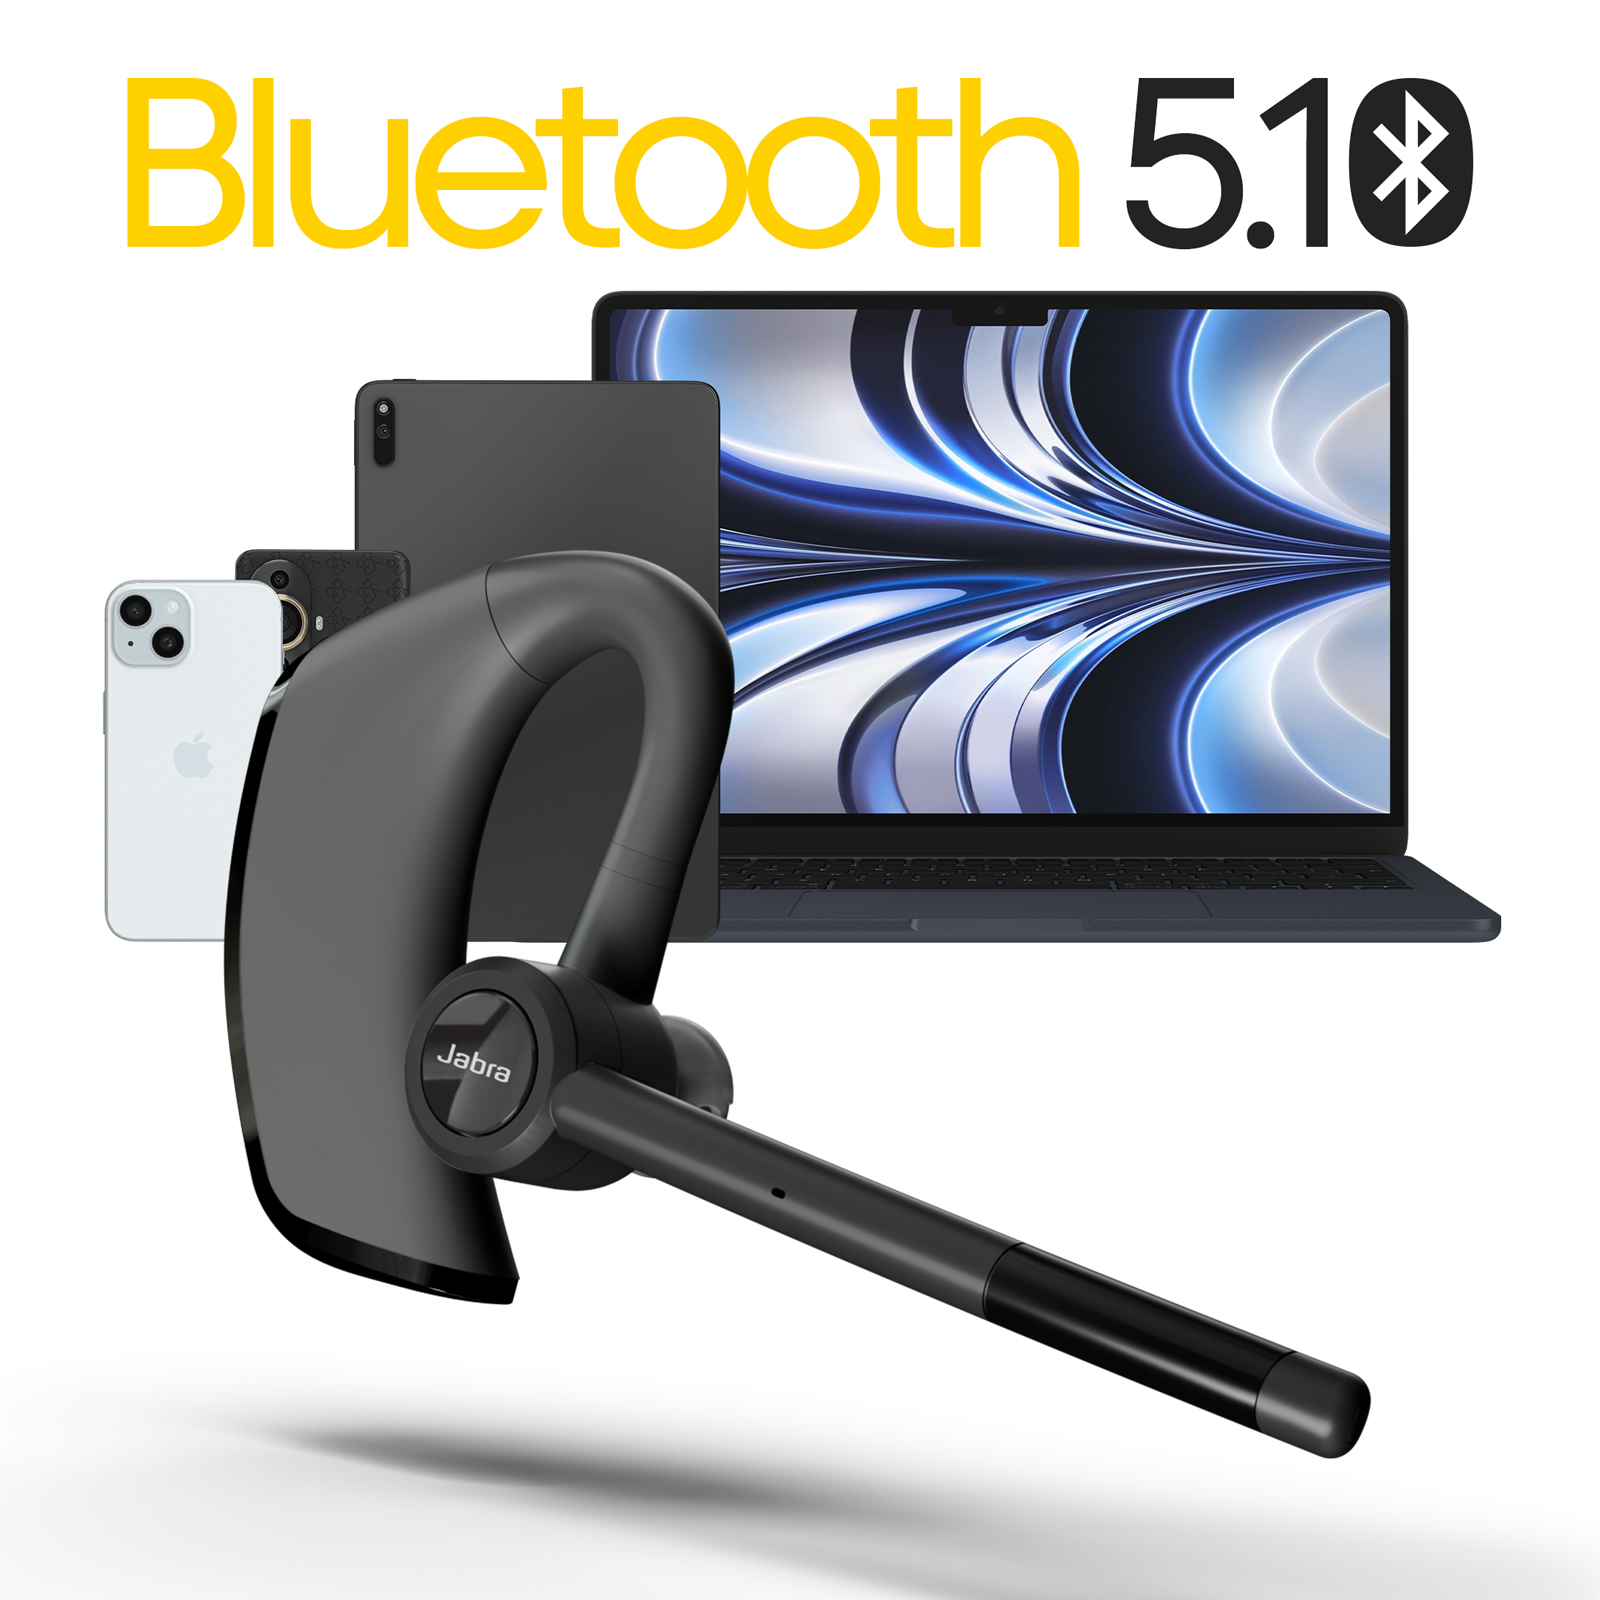 Oreillette Bluetooth Jabra, Micro perche sans fil modèle Talk 65